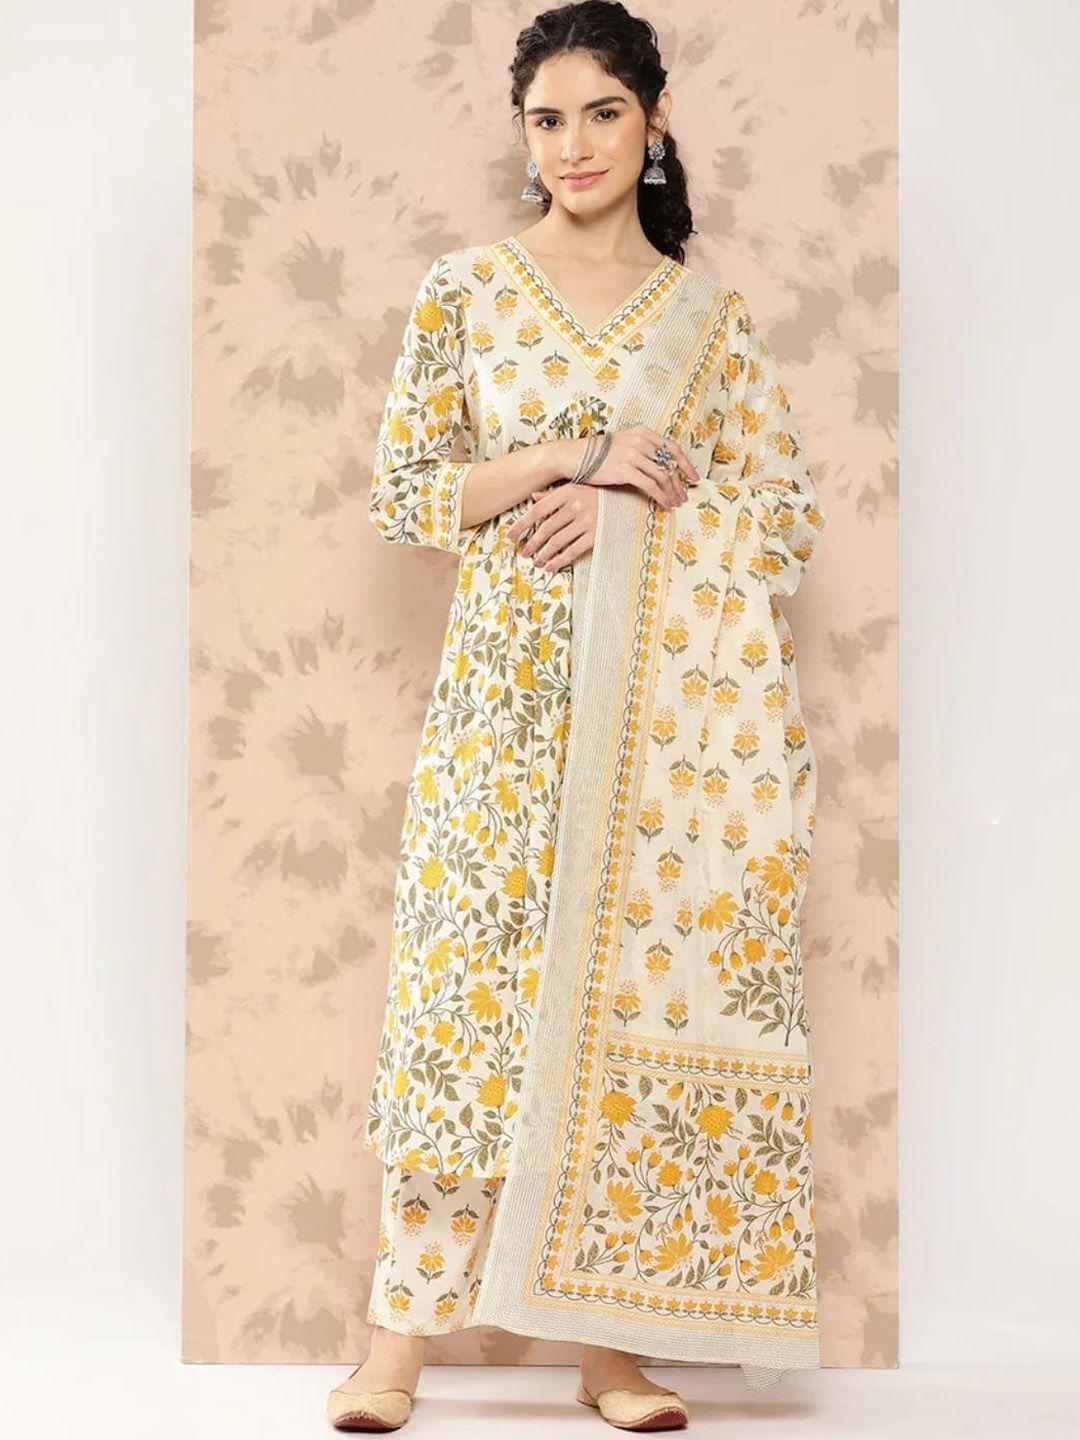 kamayra women yellow ethnic motifs yoke design empire pure cotton kurta with palazzos & with dupatta